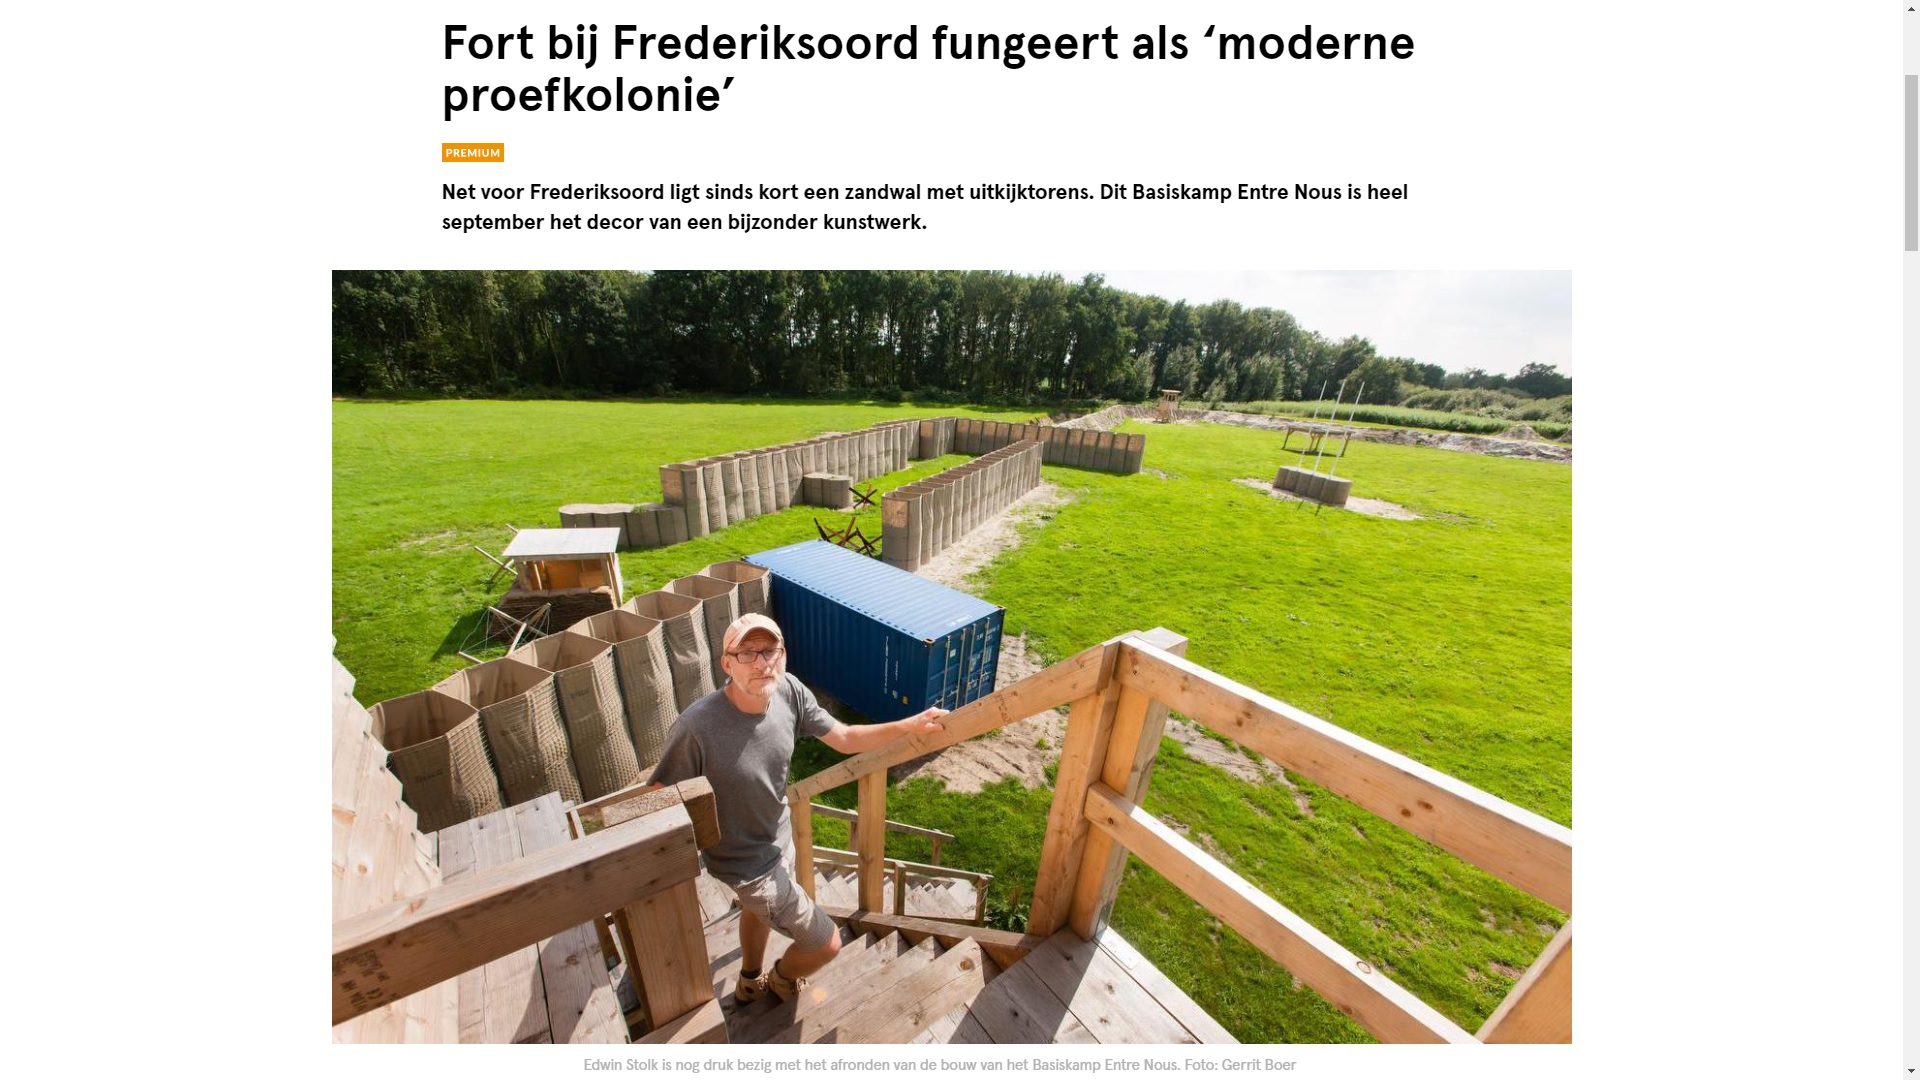 Fort bij Frederiksoord fungeert als 'moderne proefkolonie' 